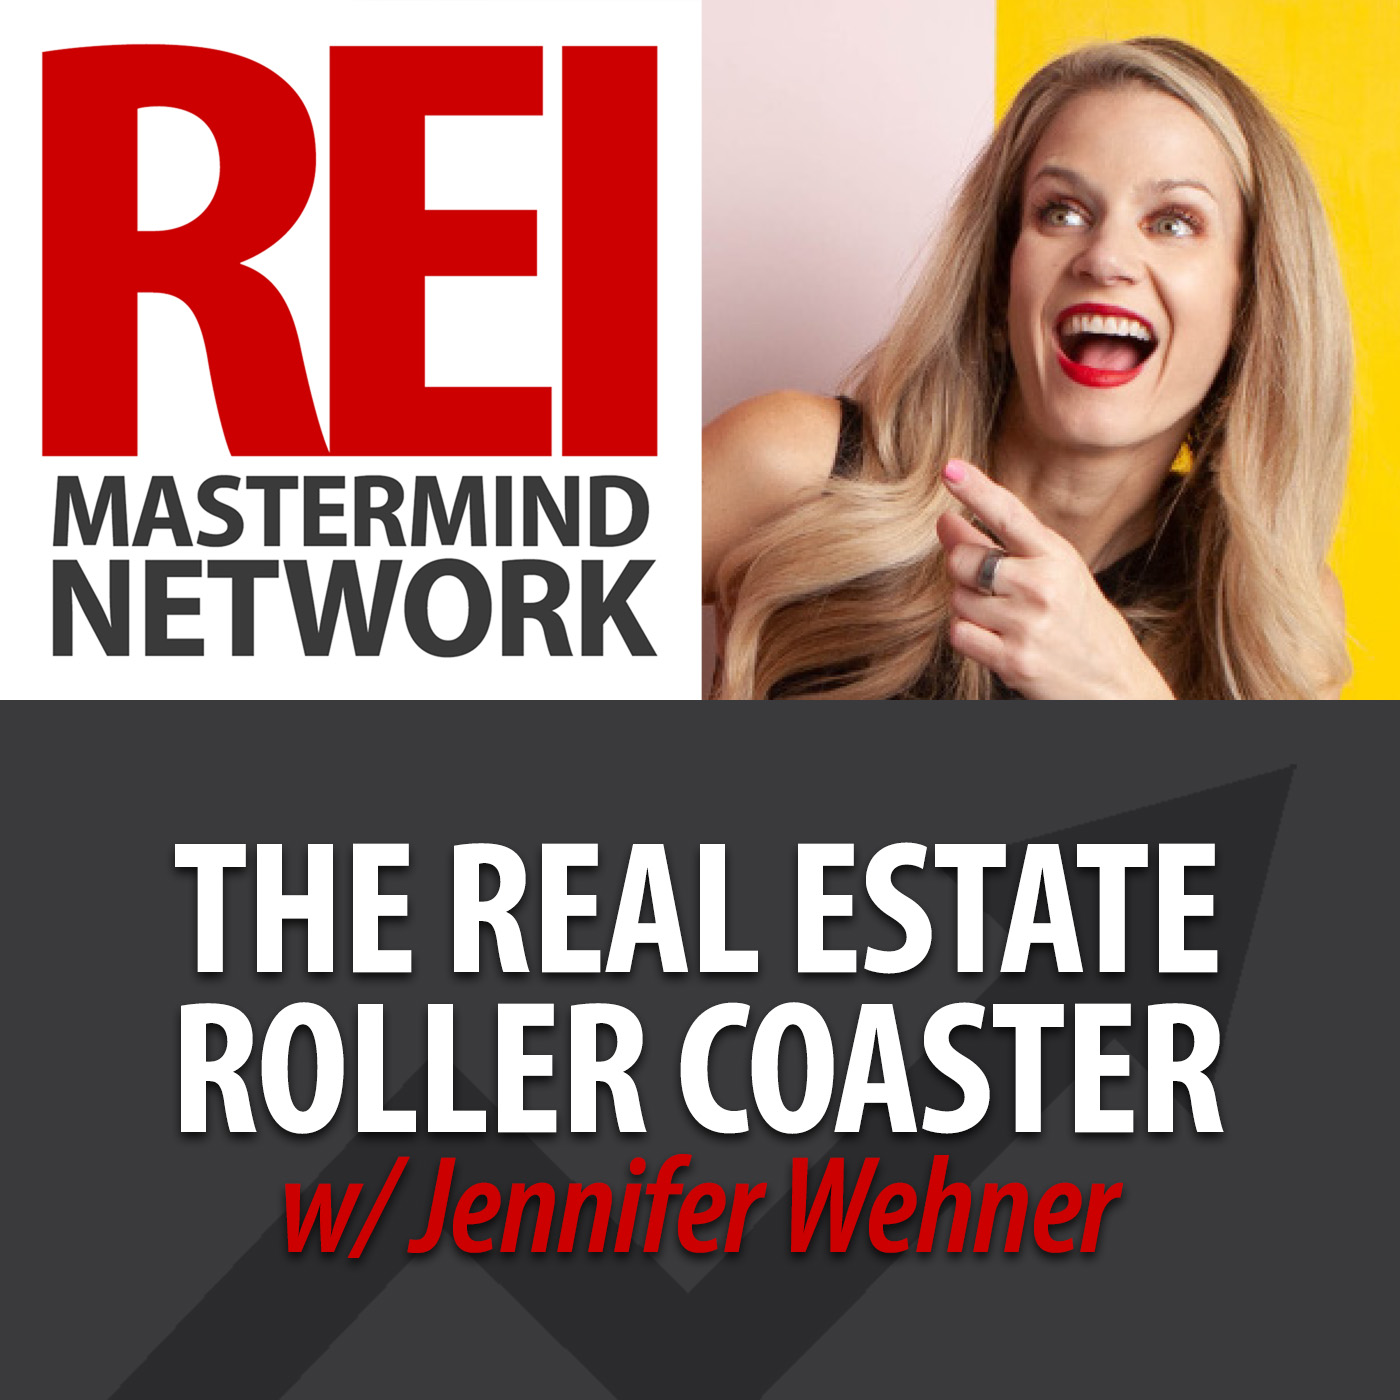 The Real Estate Roller Coaster with Jennifer Wehner